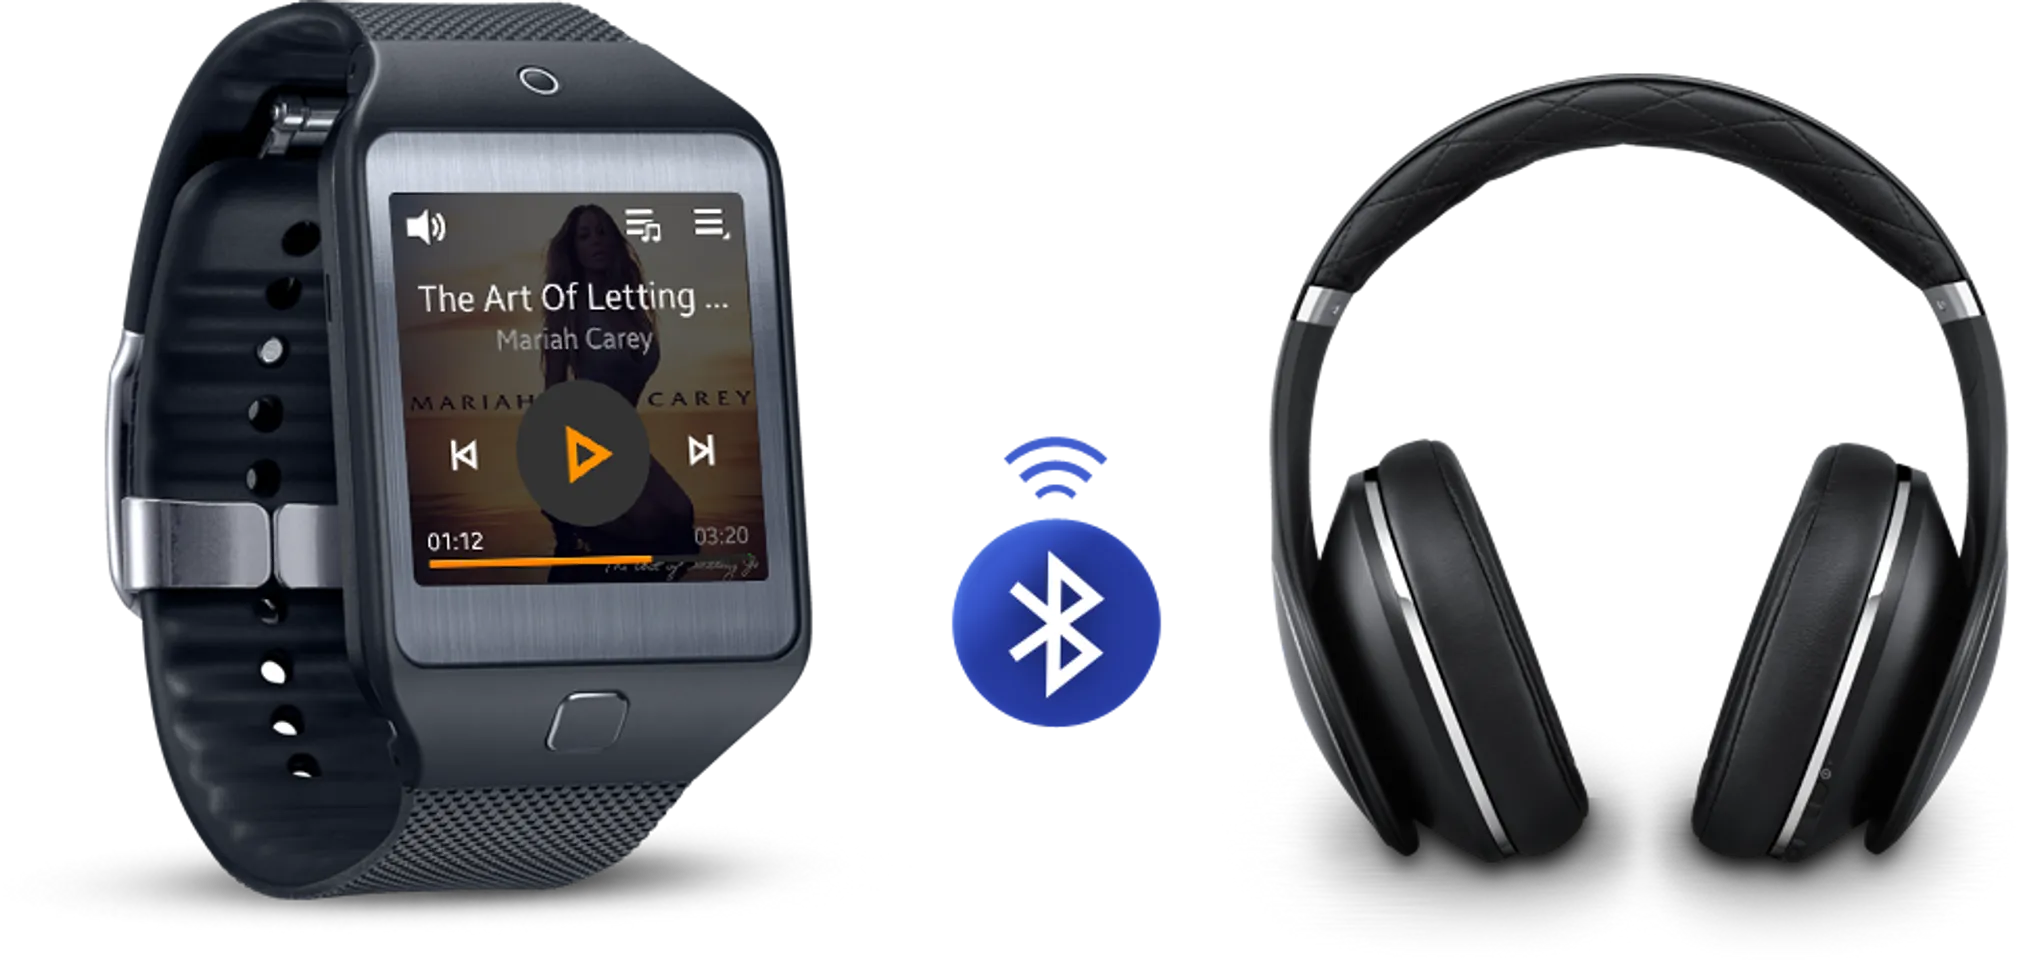 Gear 2 Neo được kết nối với tai nghe Bluetooth cho âm thanh sống động